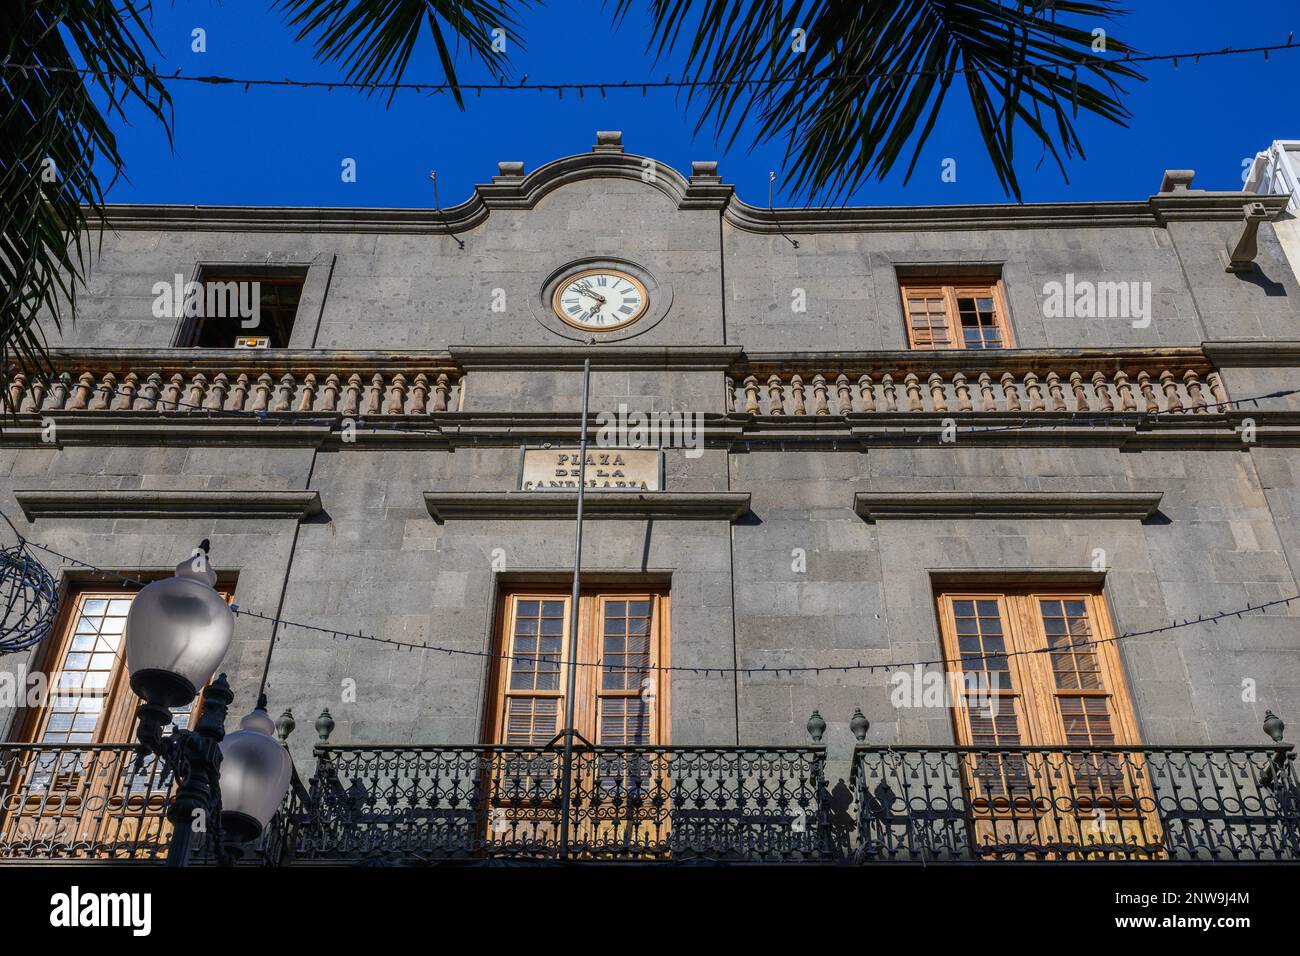 La façade néoclassique et baroque canarienne du palais de la Carta du XVIIIe siècle de Francisco de la Pierre sur la Plaza de la Candelaria à Santra Cruz, Tenerife Banque D'Images